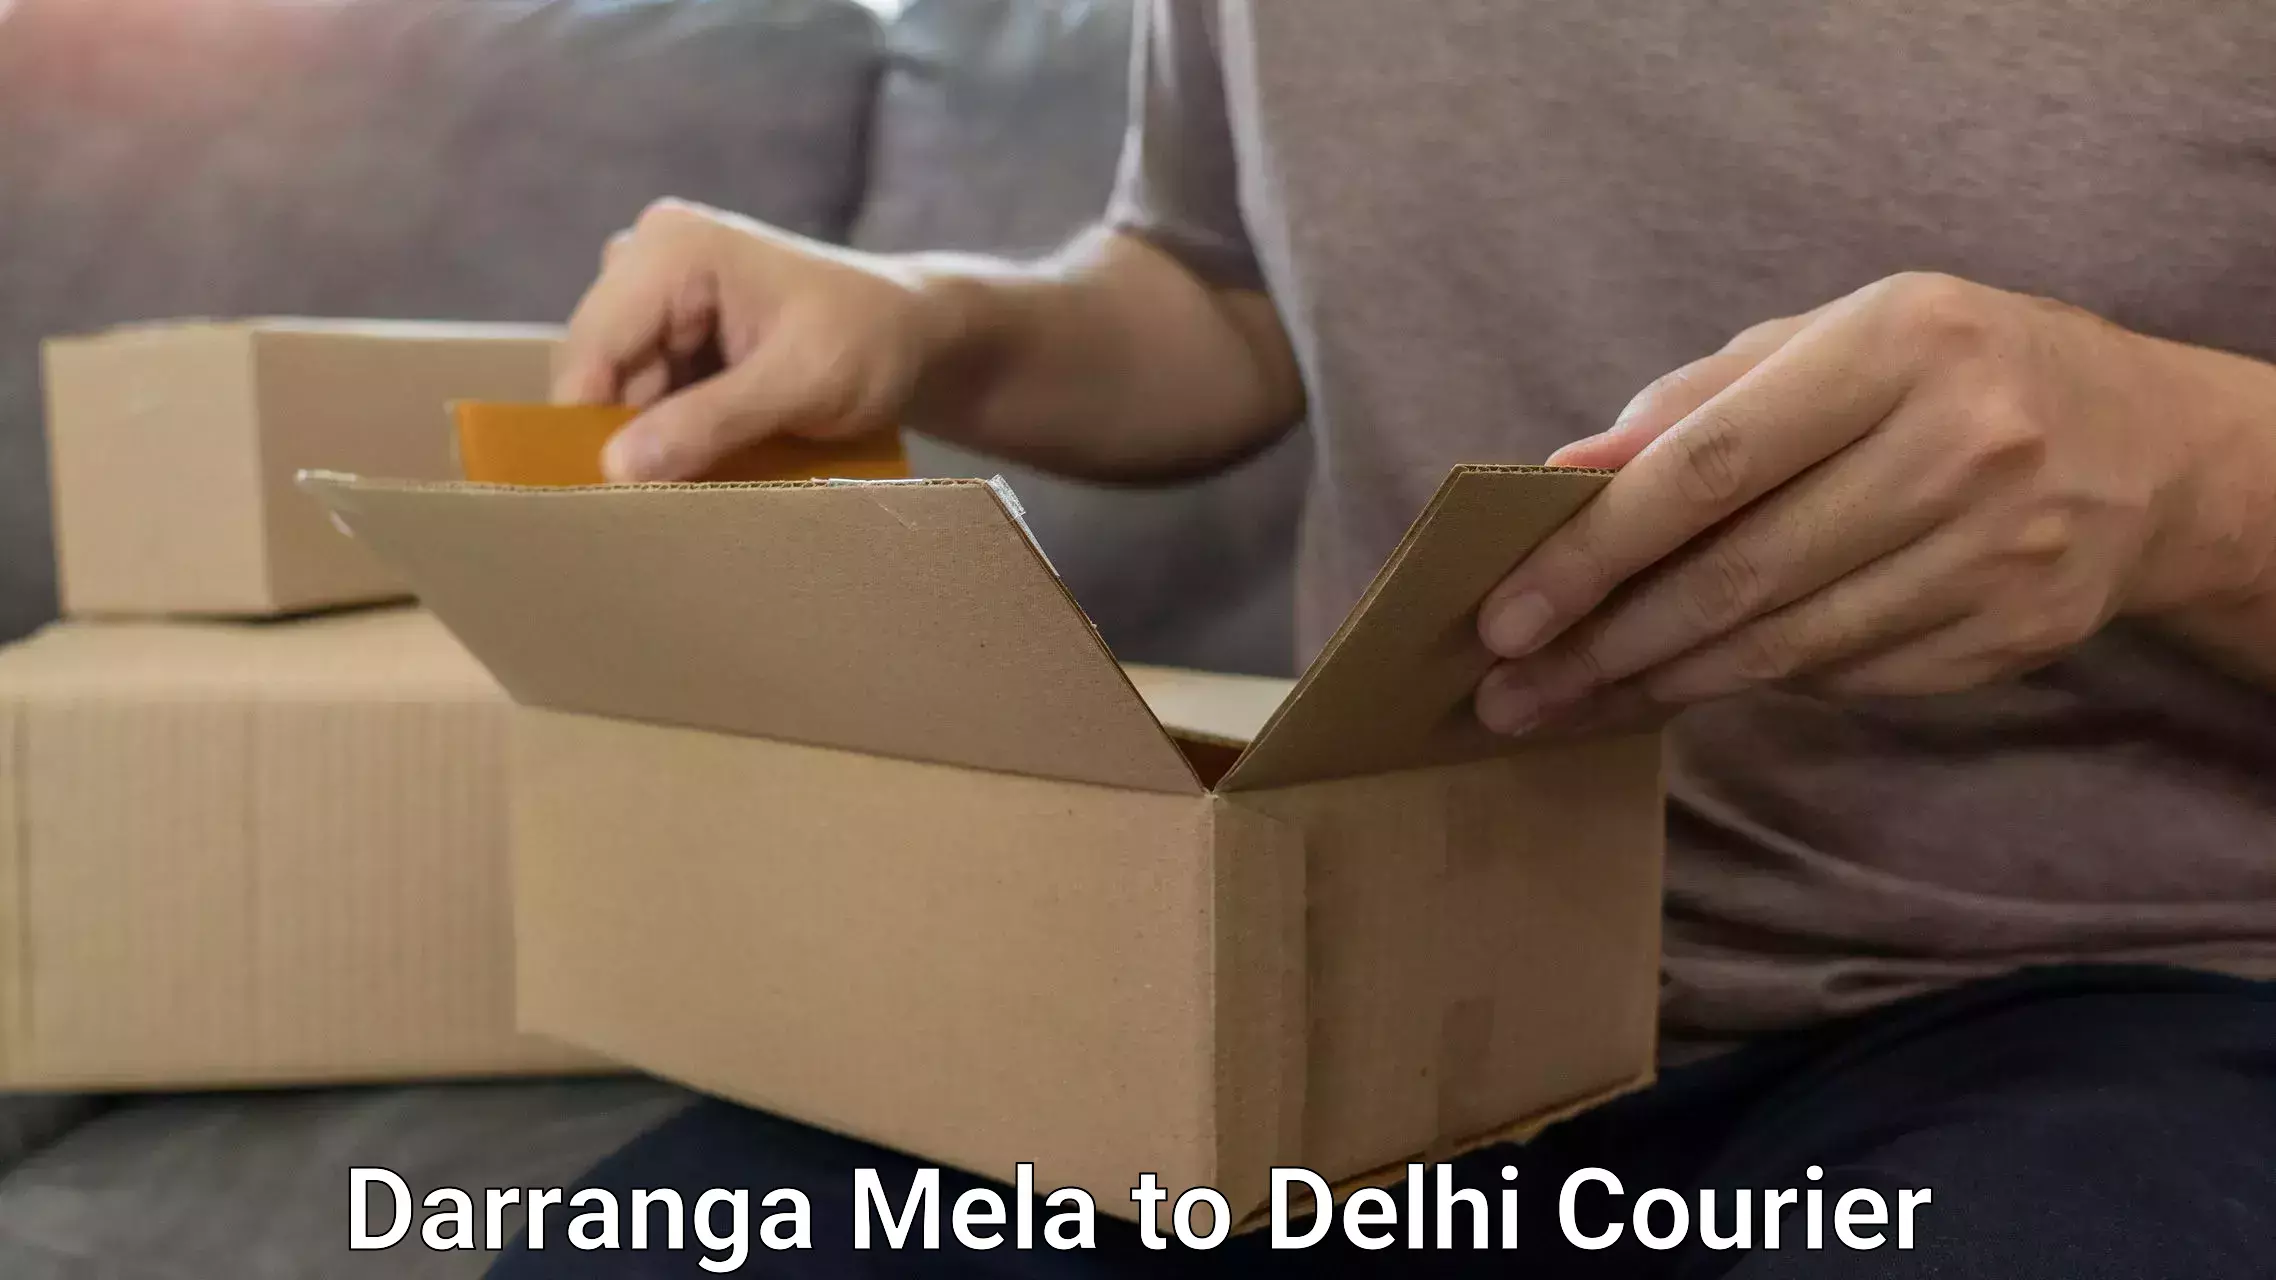 Luggage delivery rates in Darranga Mela to Jamia Millia Islamia New Delhi